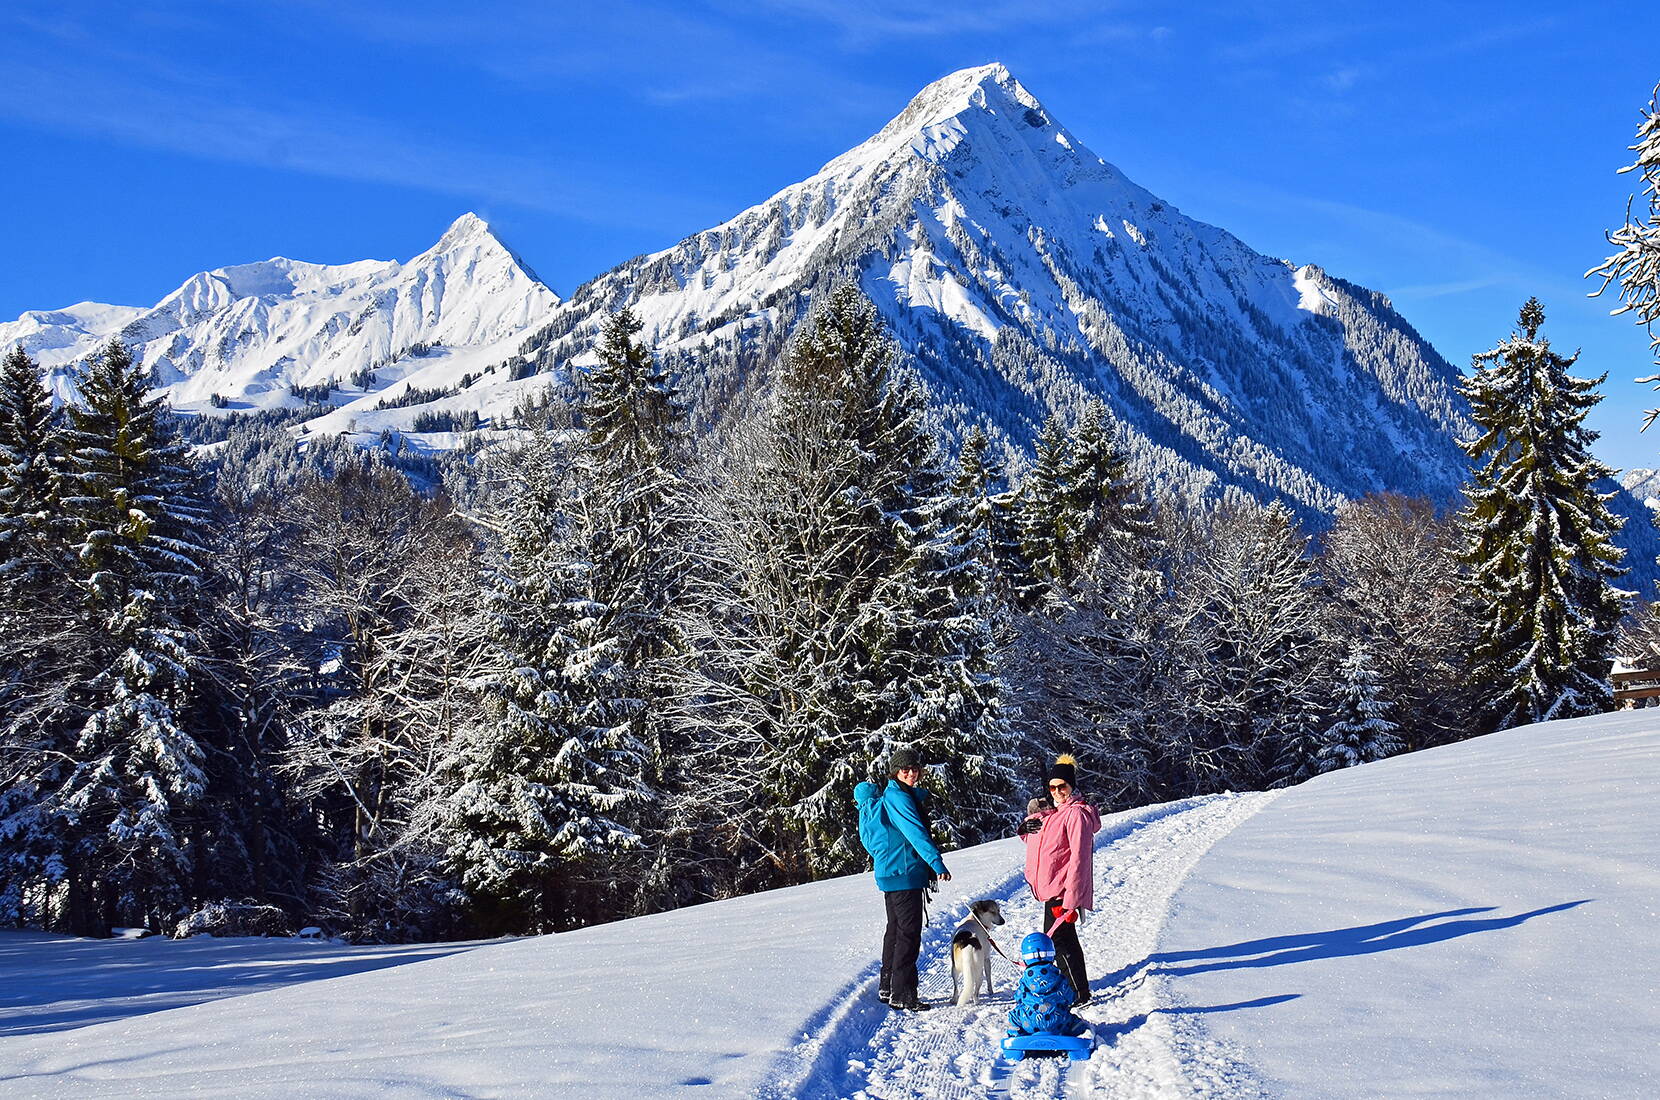 Escursione per famiglie escursioni invernali Aeschi. Ad Aeschi e dintorni sono disponibili oltre 20 chilometri di sentieri escursionistici invernali battuti e segnalati, con viste magnifiche. Numerosi ristoranti vi invitano a riscaldarvi lungo il percorso.